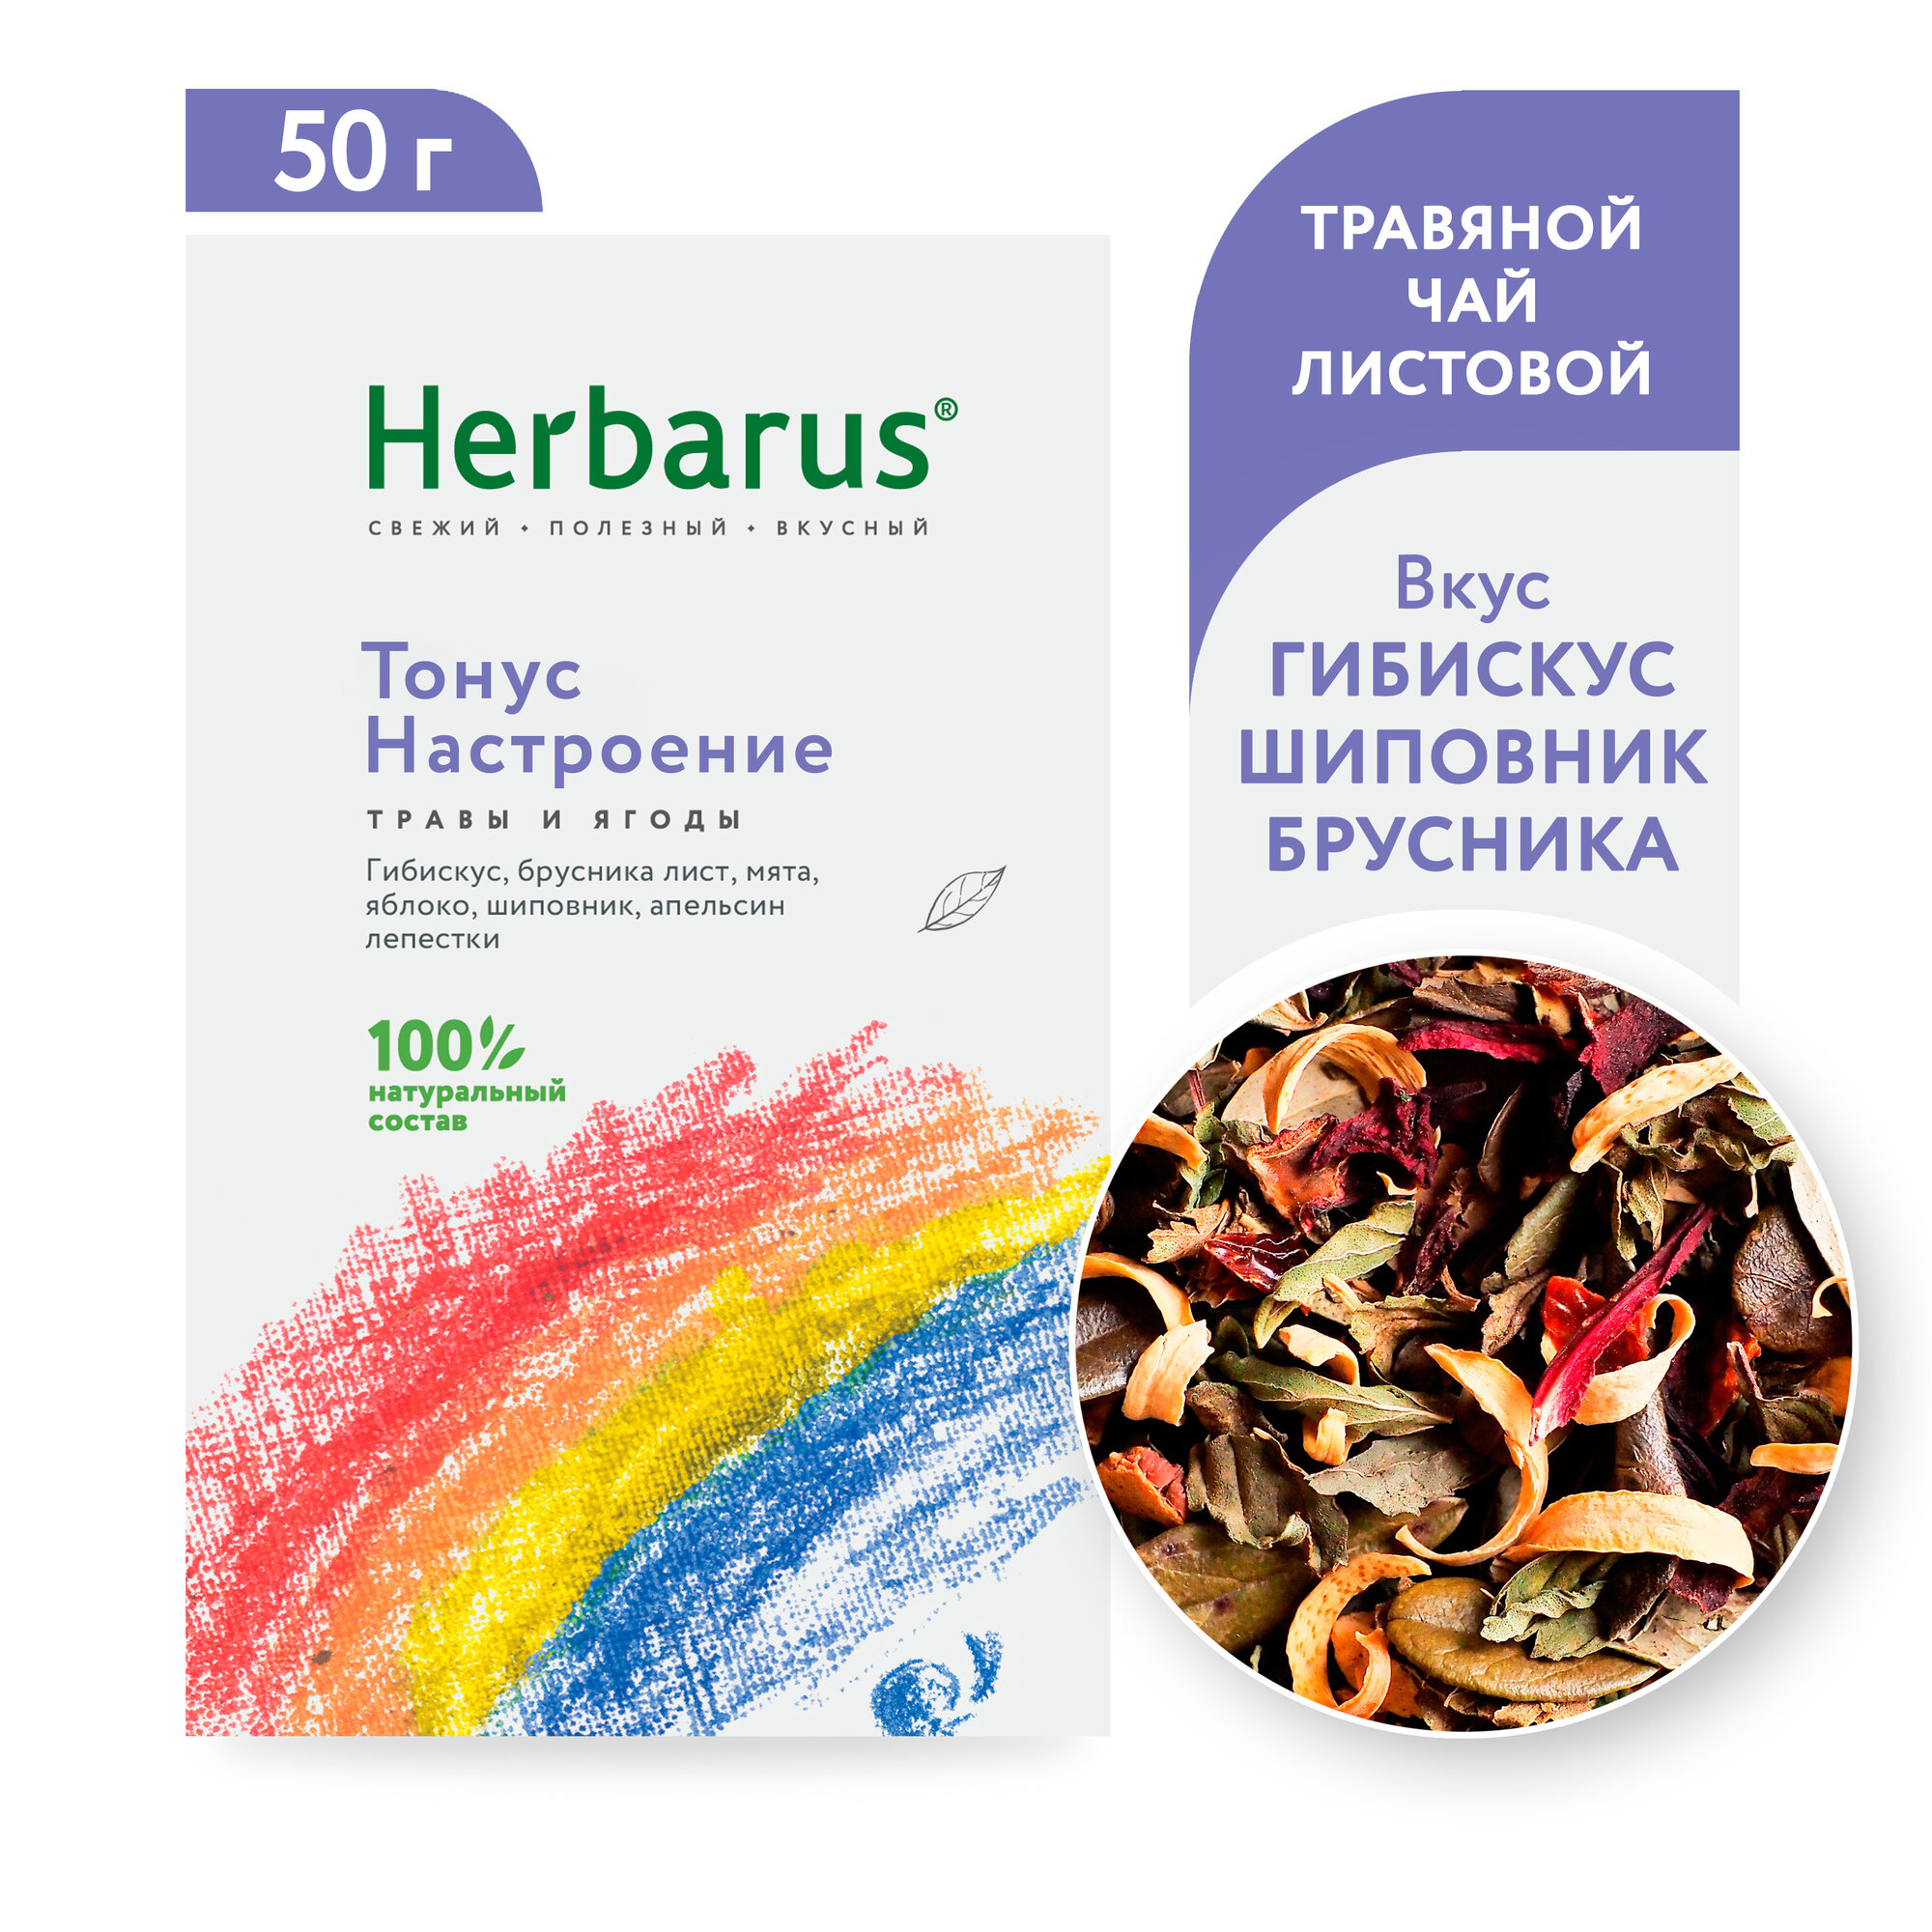 Чайный напиток Herbarus "Тонус Настроение", листовой, 50г.